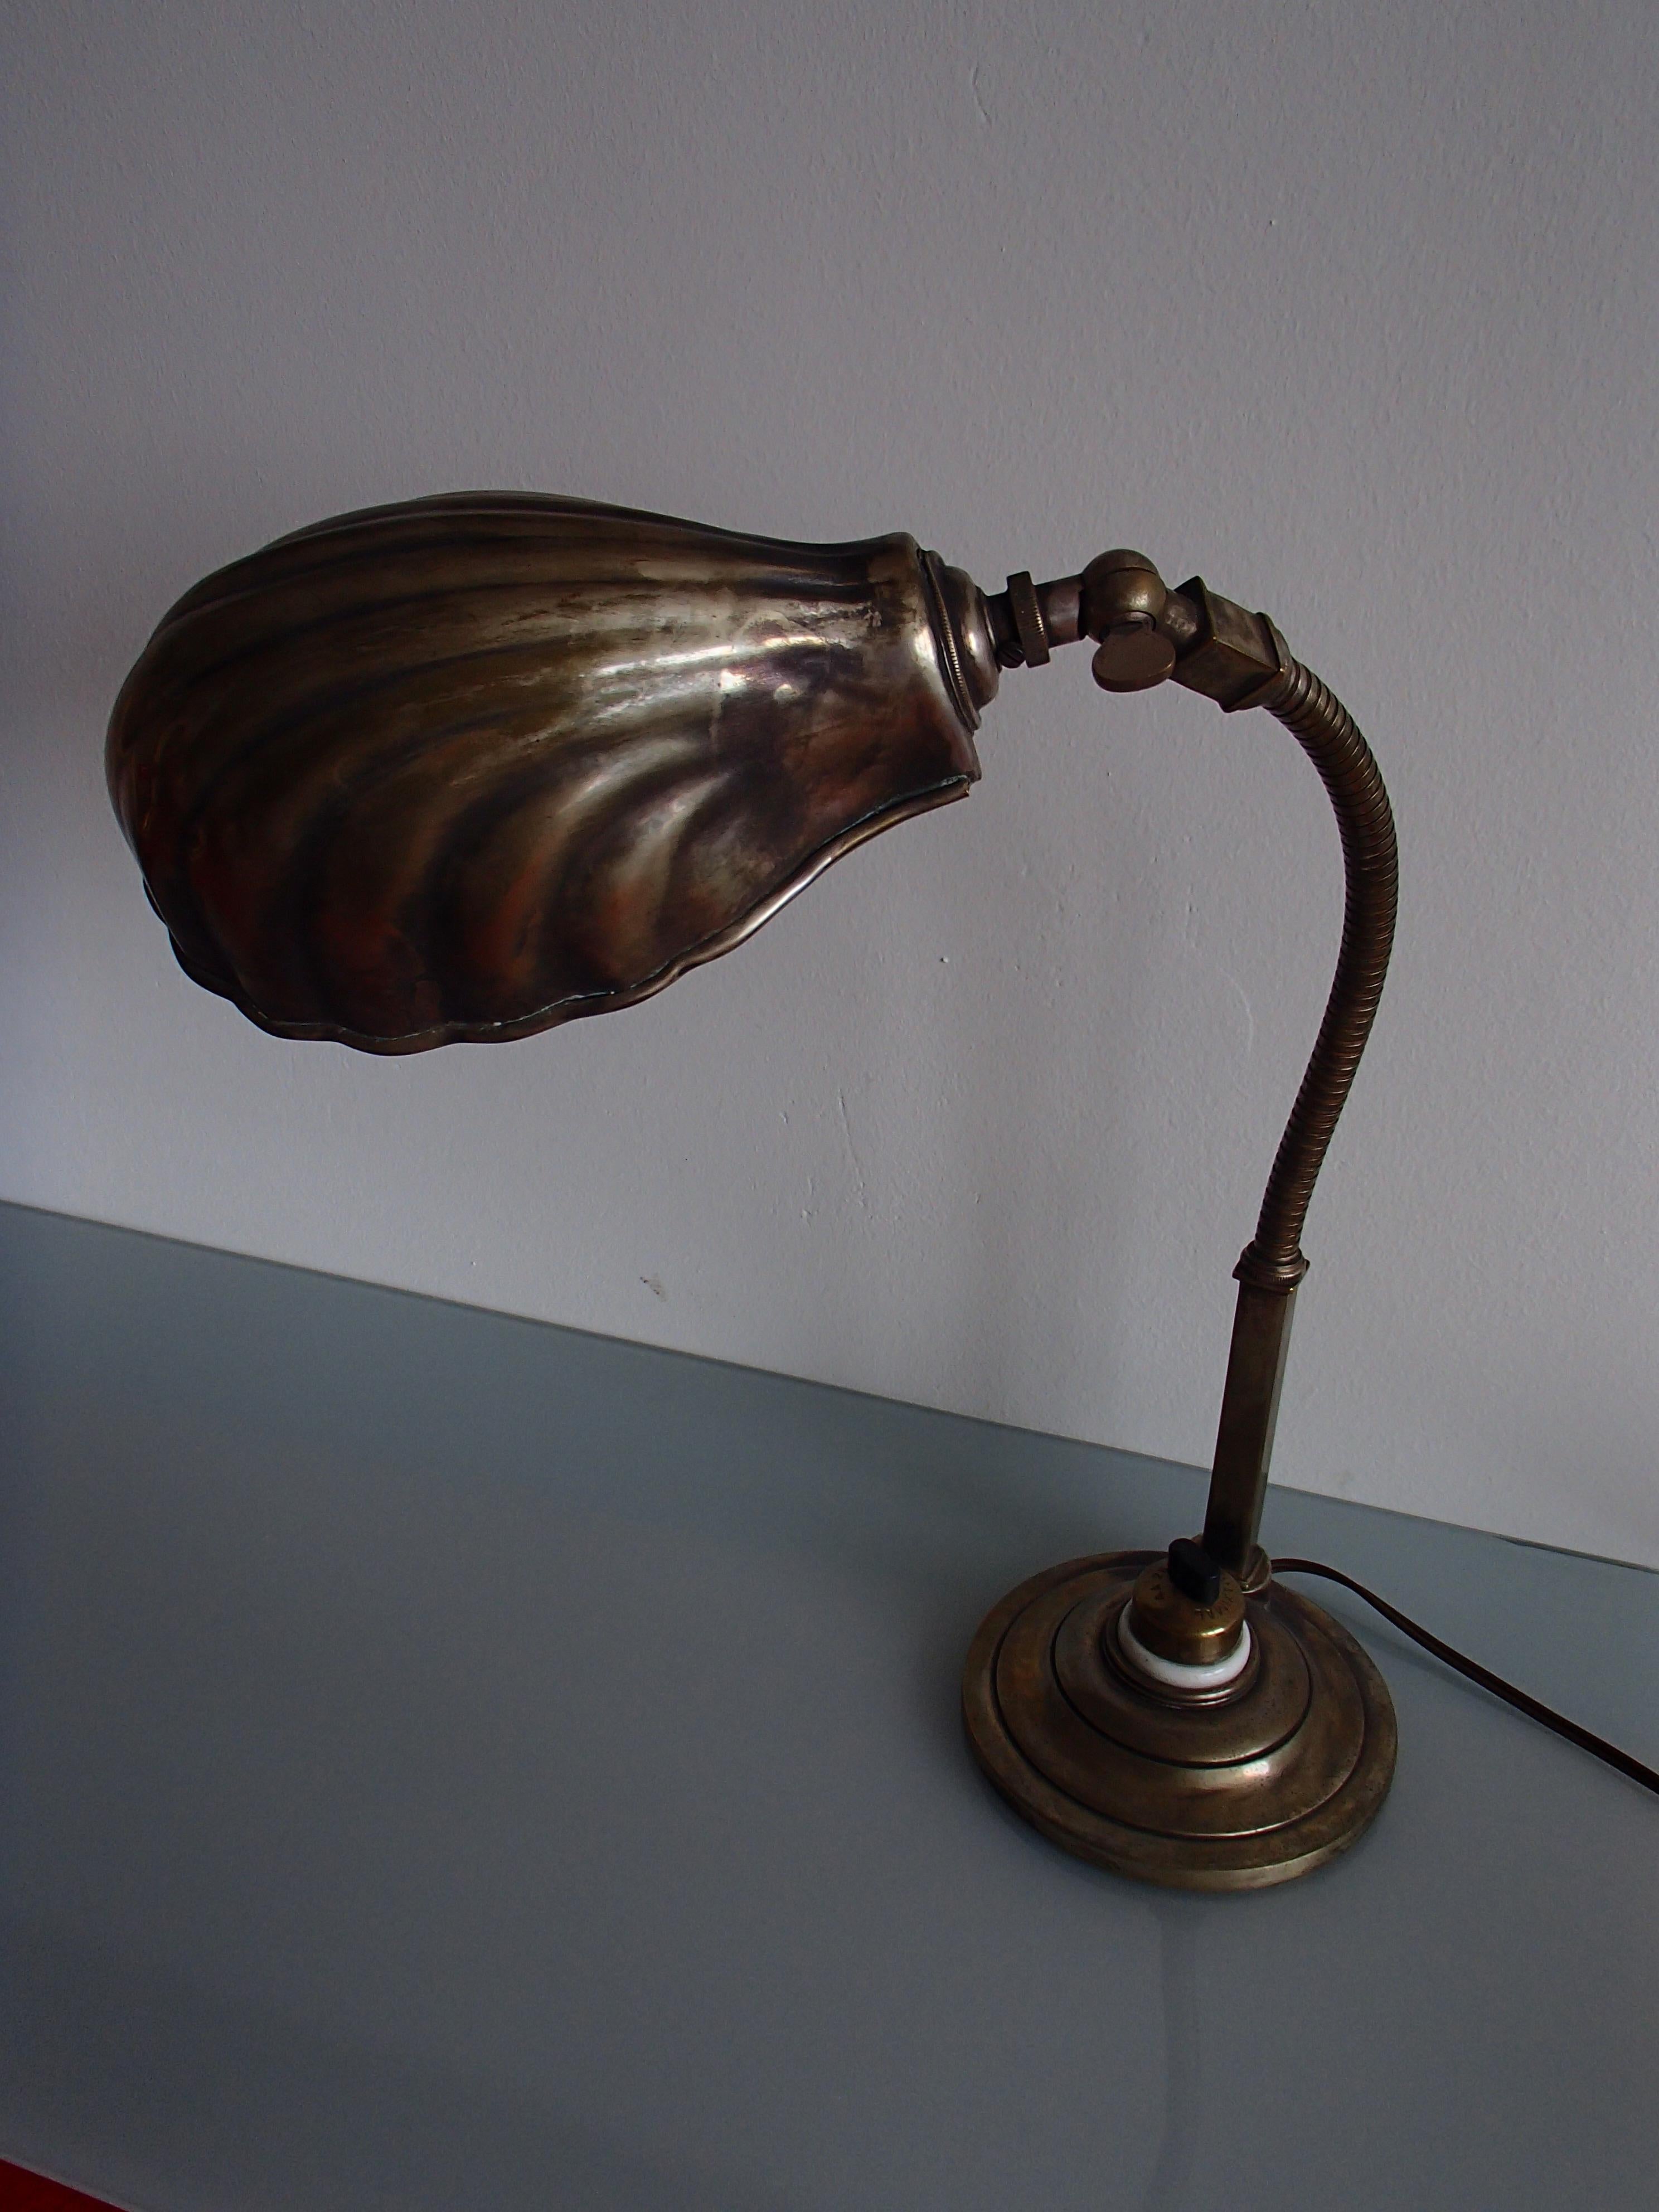 Lampe de table en forme de coquillage du 19ème siècle avec un col flexible.